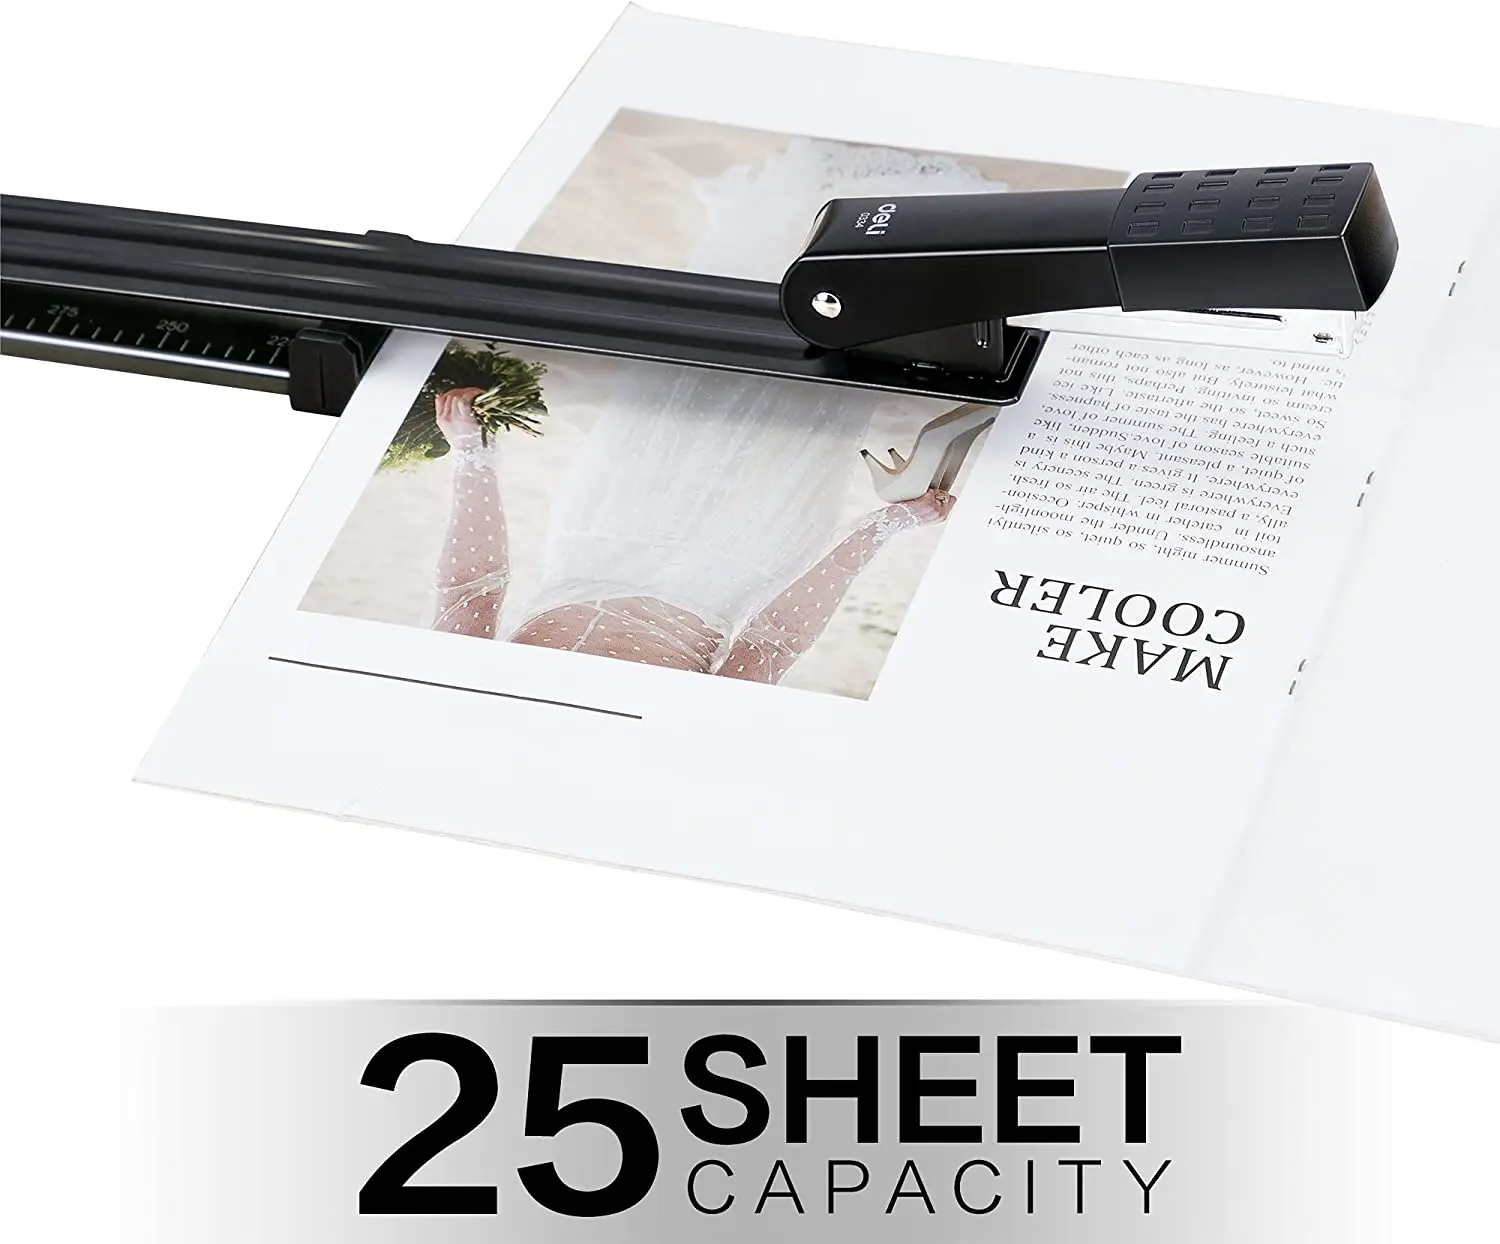 Long Reach Stapler, 25 Sheet Capacity, Long Arm Standard Staplers for Booklet or Book Binding, Black